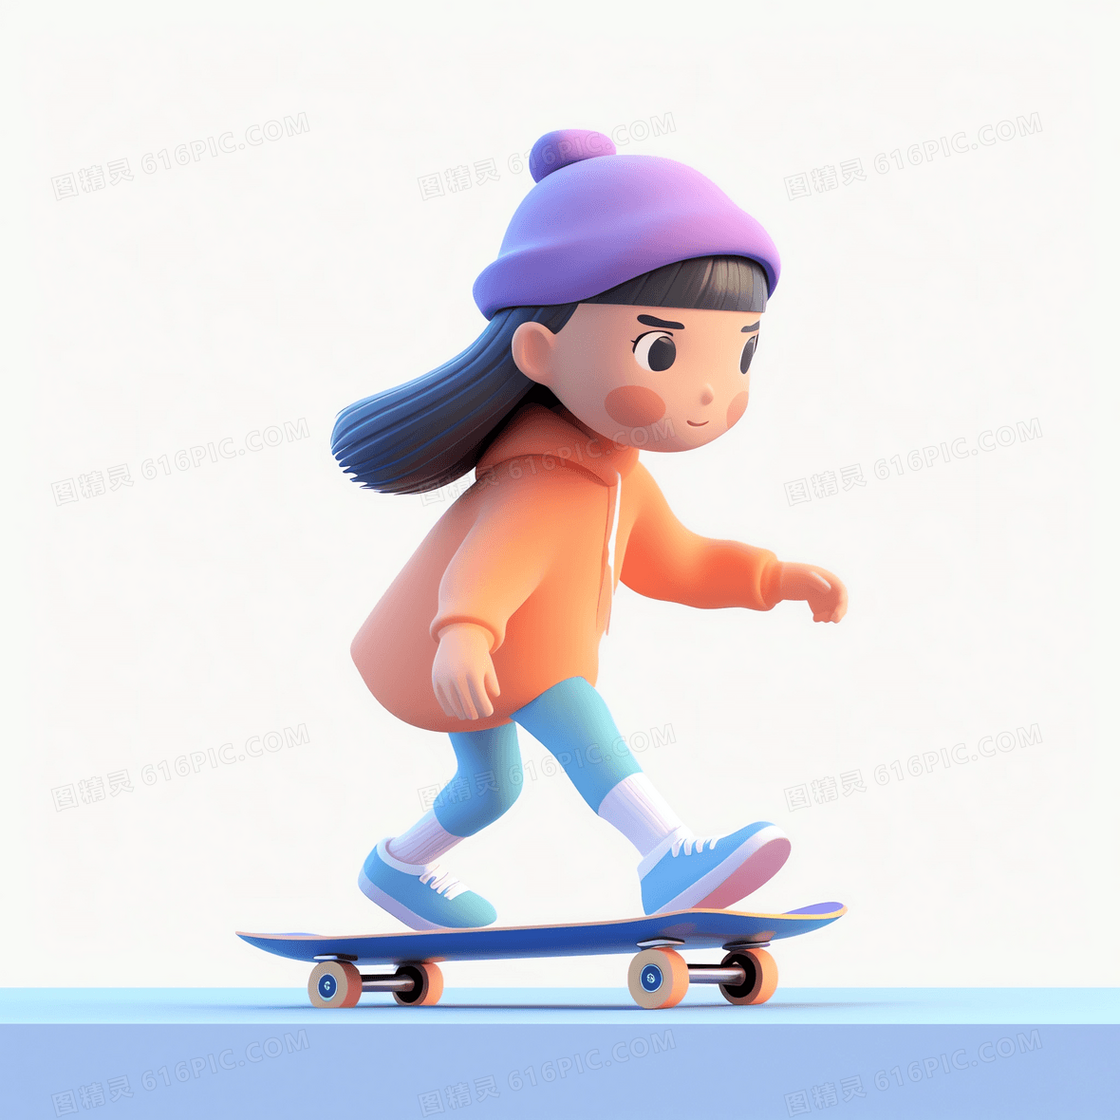 在滑板上加速滑行的可爱女孩3D模型